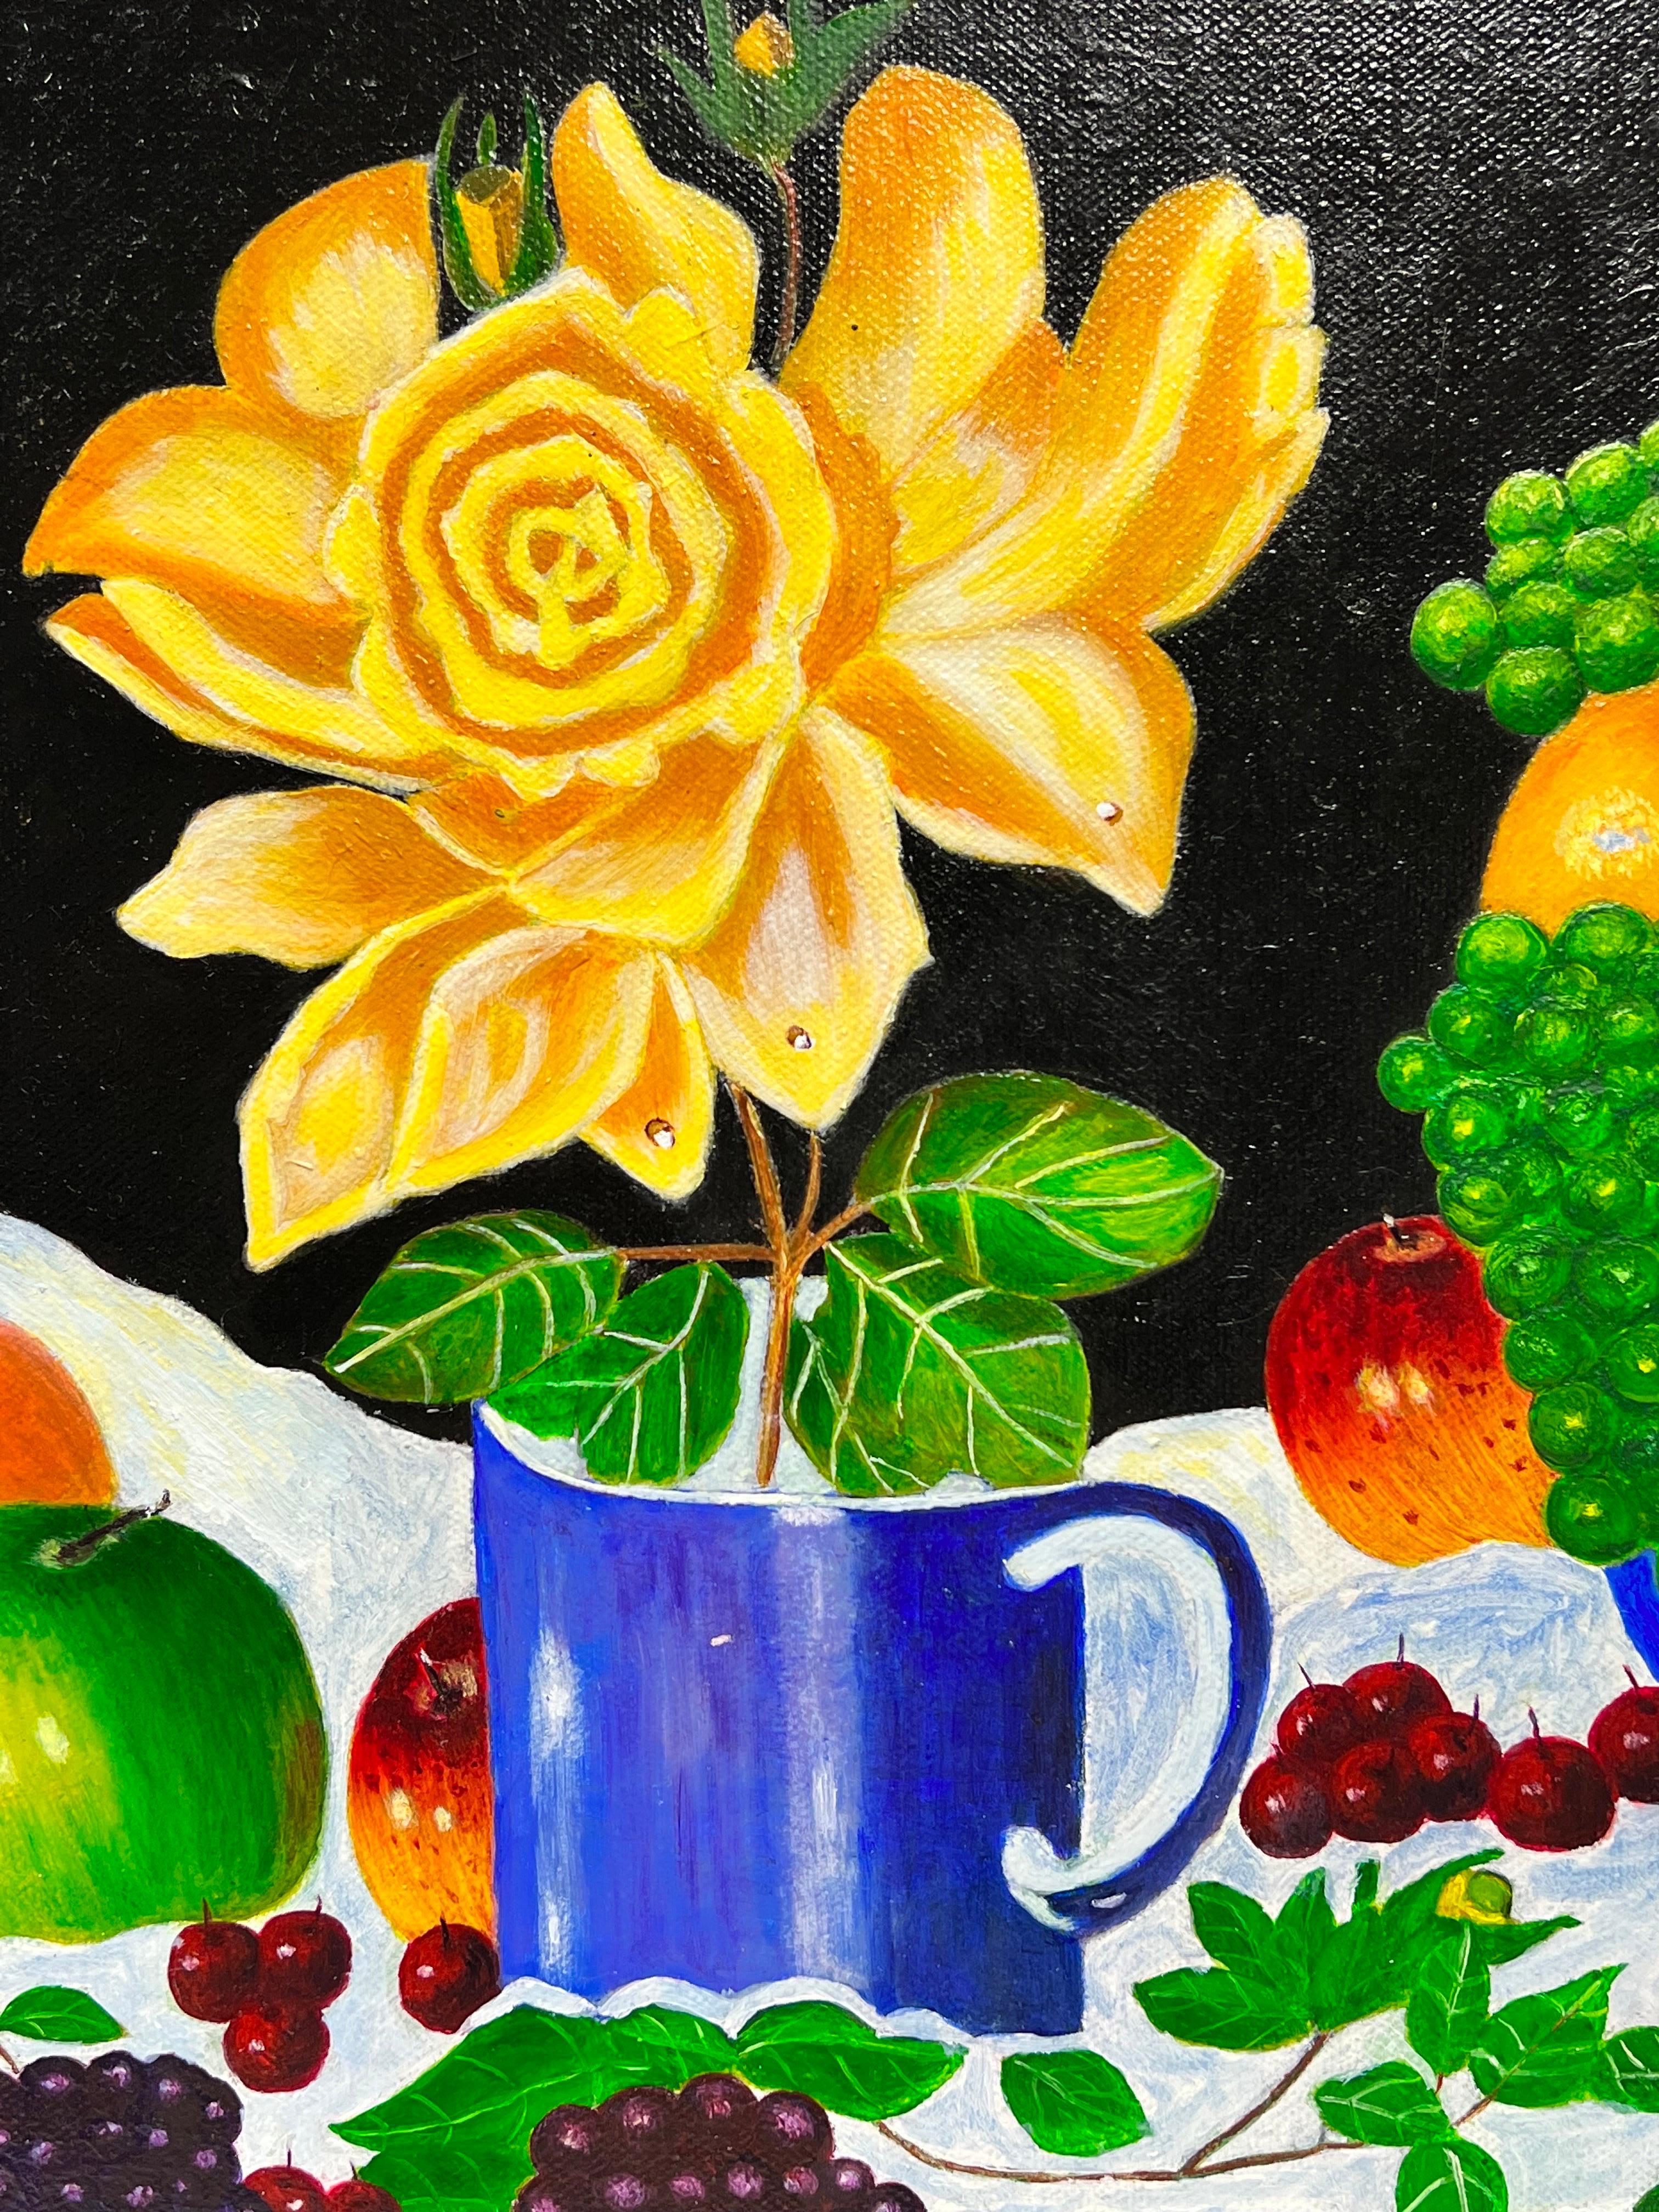 Nature morte abstraite contemporaine colorée à l'huile Fruit & Flowers - Painting de Ben Powell